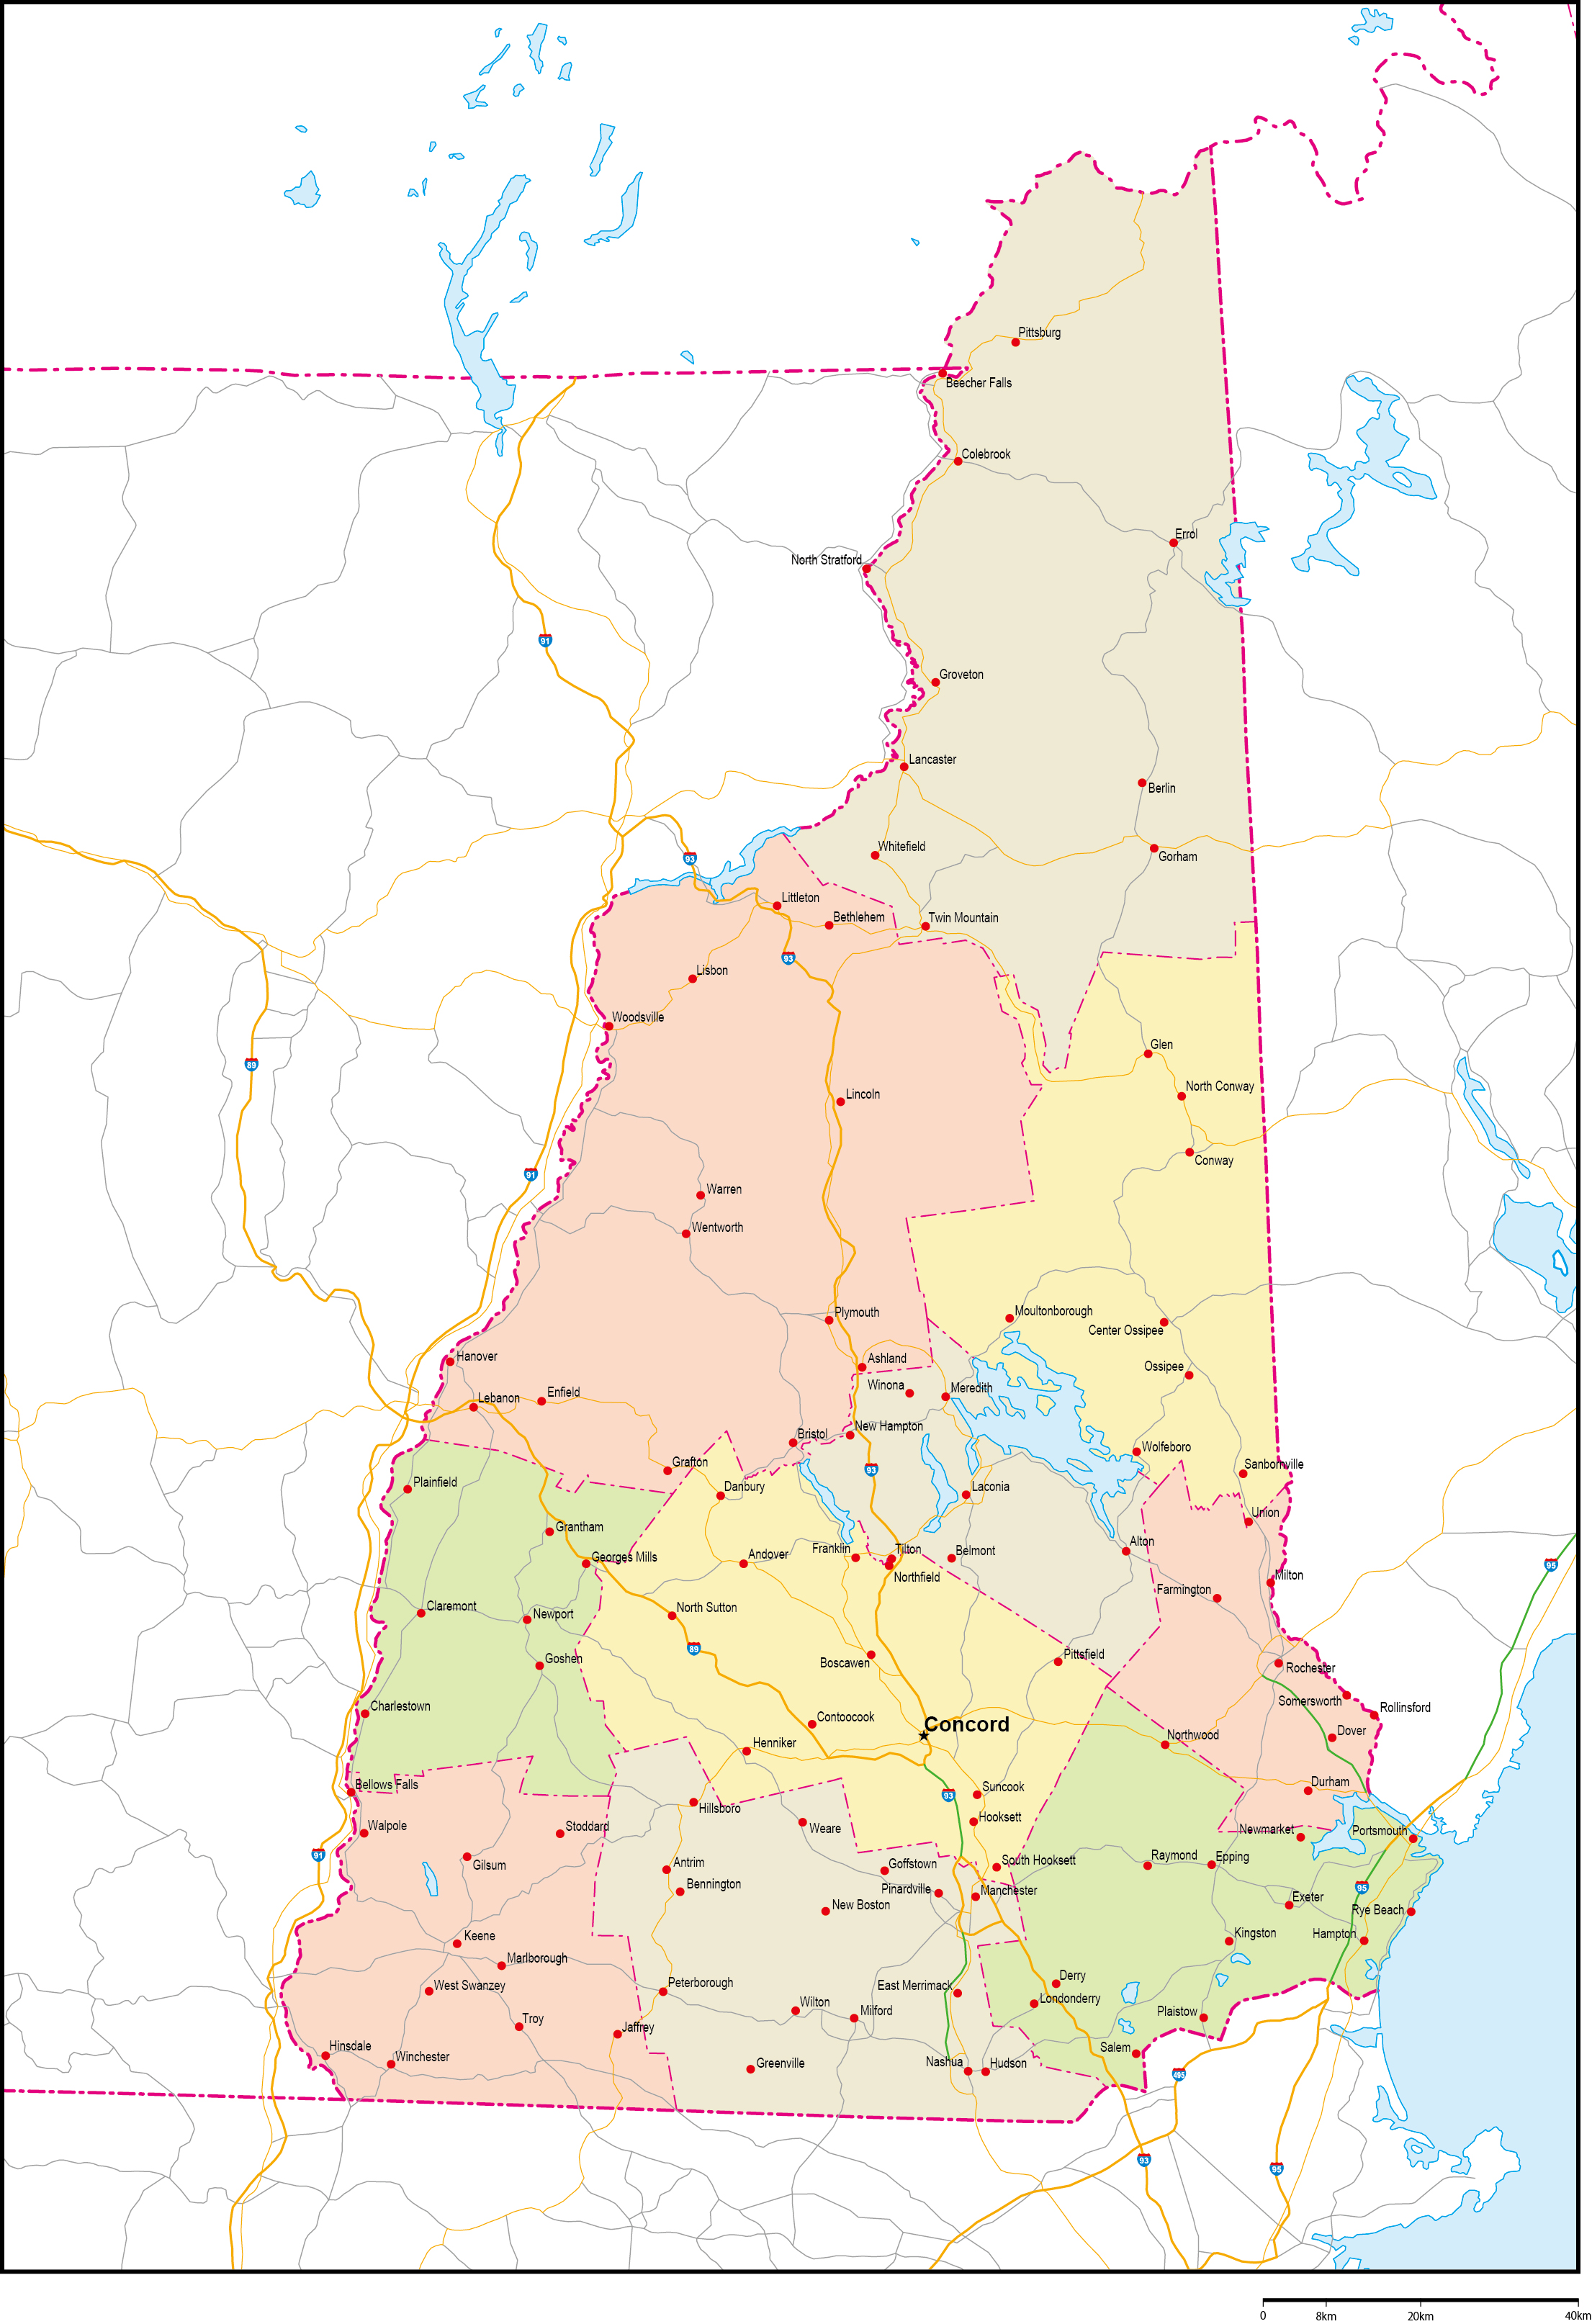 ニューハンプシャー州郡色分け地図州都・主な都市・道路あり(英語)フリーデータの画像